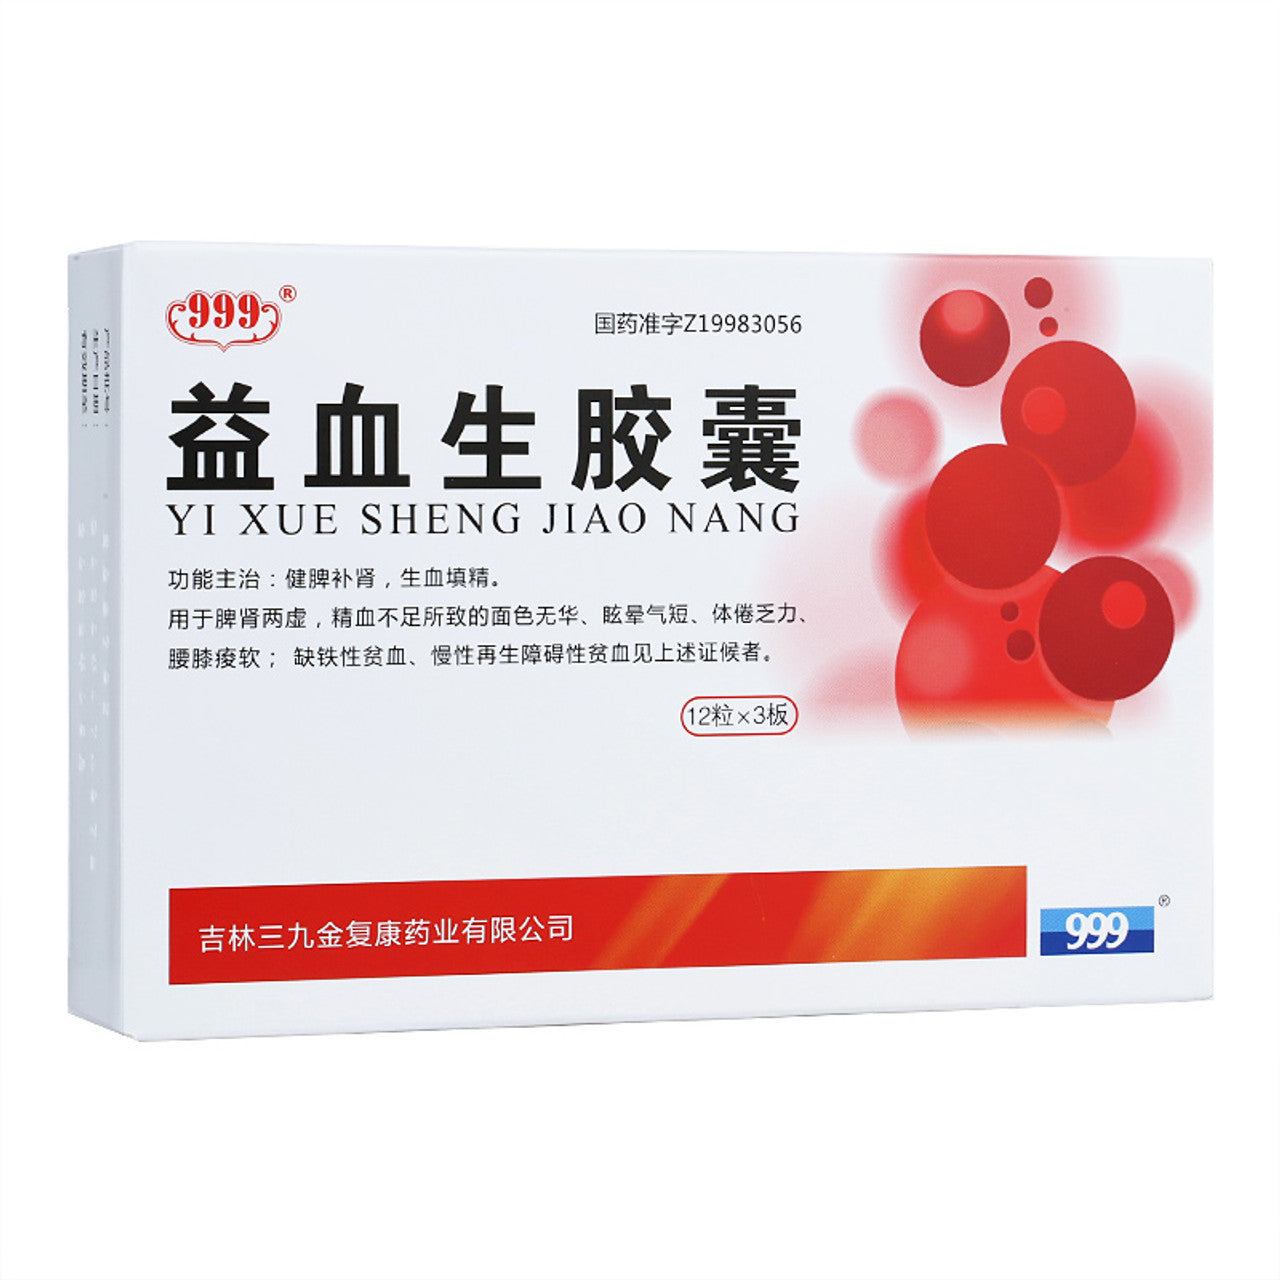 Herbal Medicine. Brand 999. Yixuesheng Capsule or Yixuesheng Jiaonang or  YiXueShengJiaoNang or YI XUE SHENG JIAO NANG For Tonify Blood